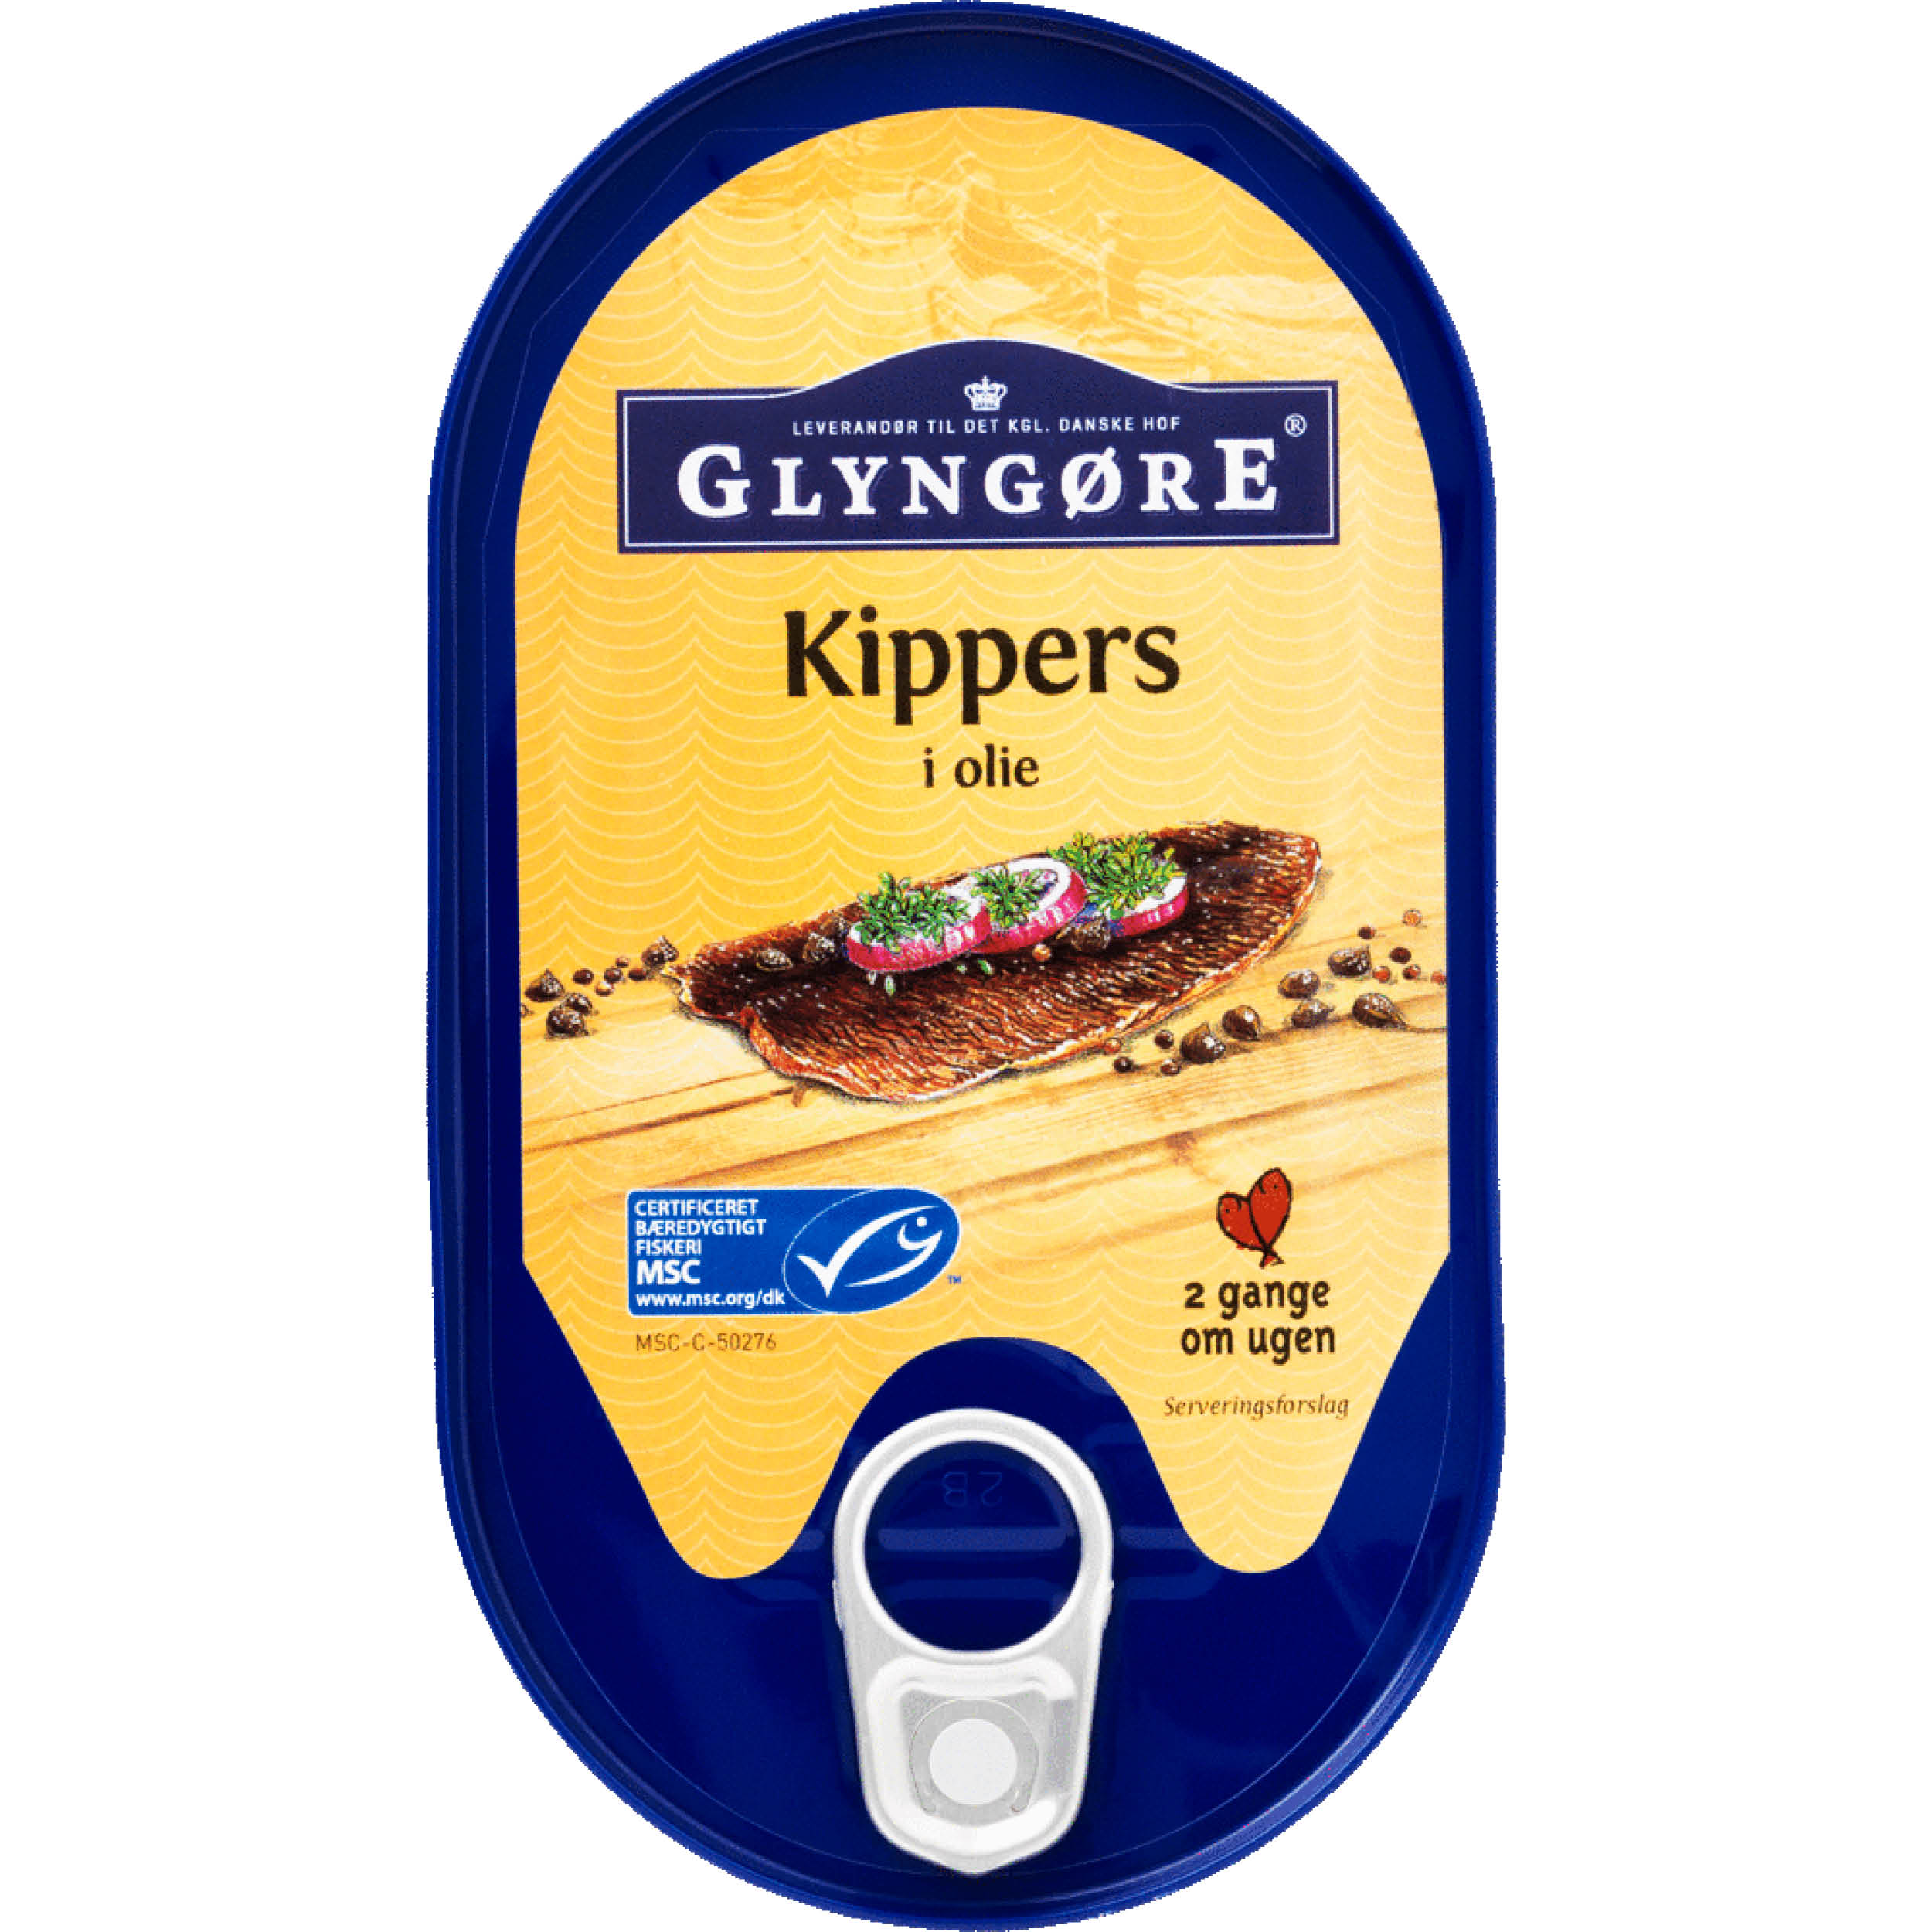 Glyngøre_Kippers-i-olie_190g